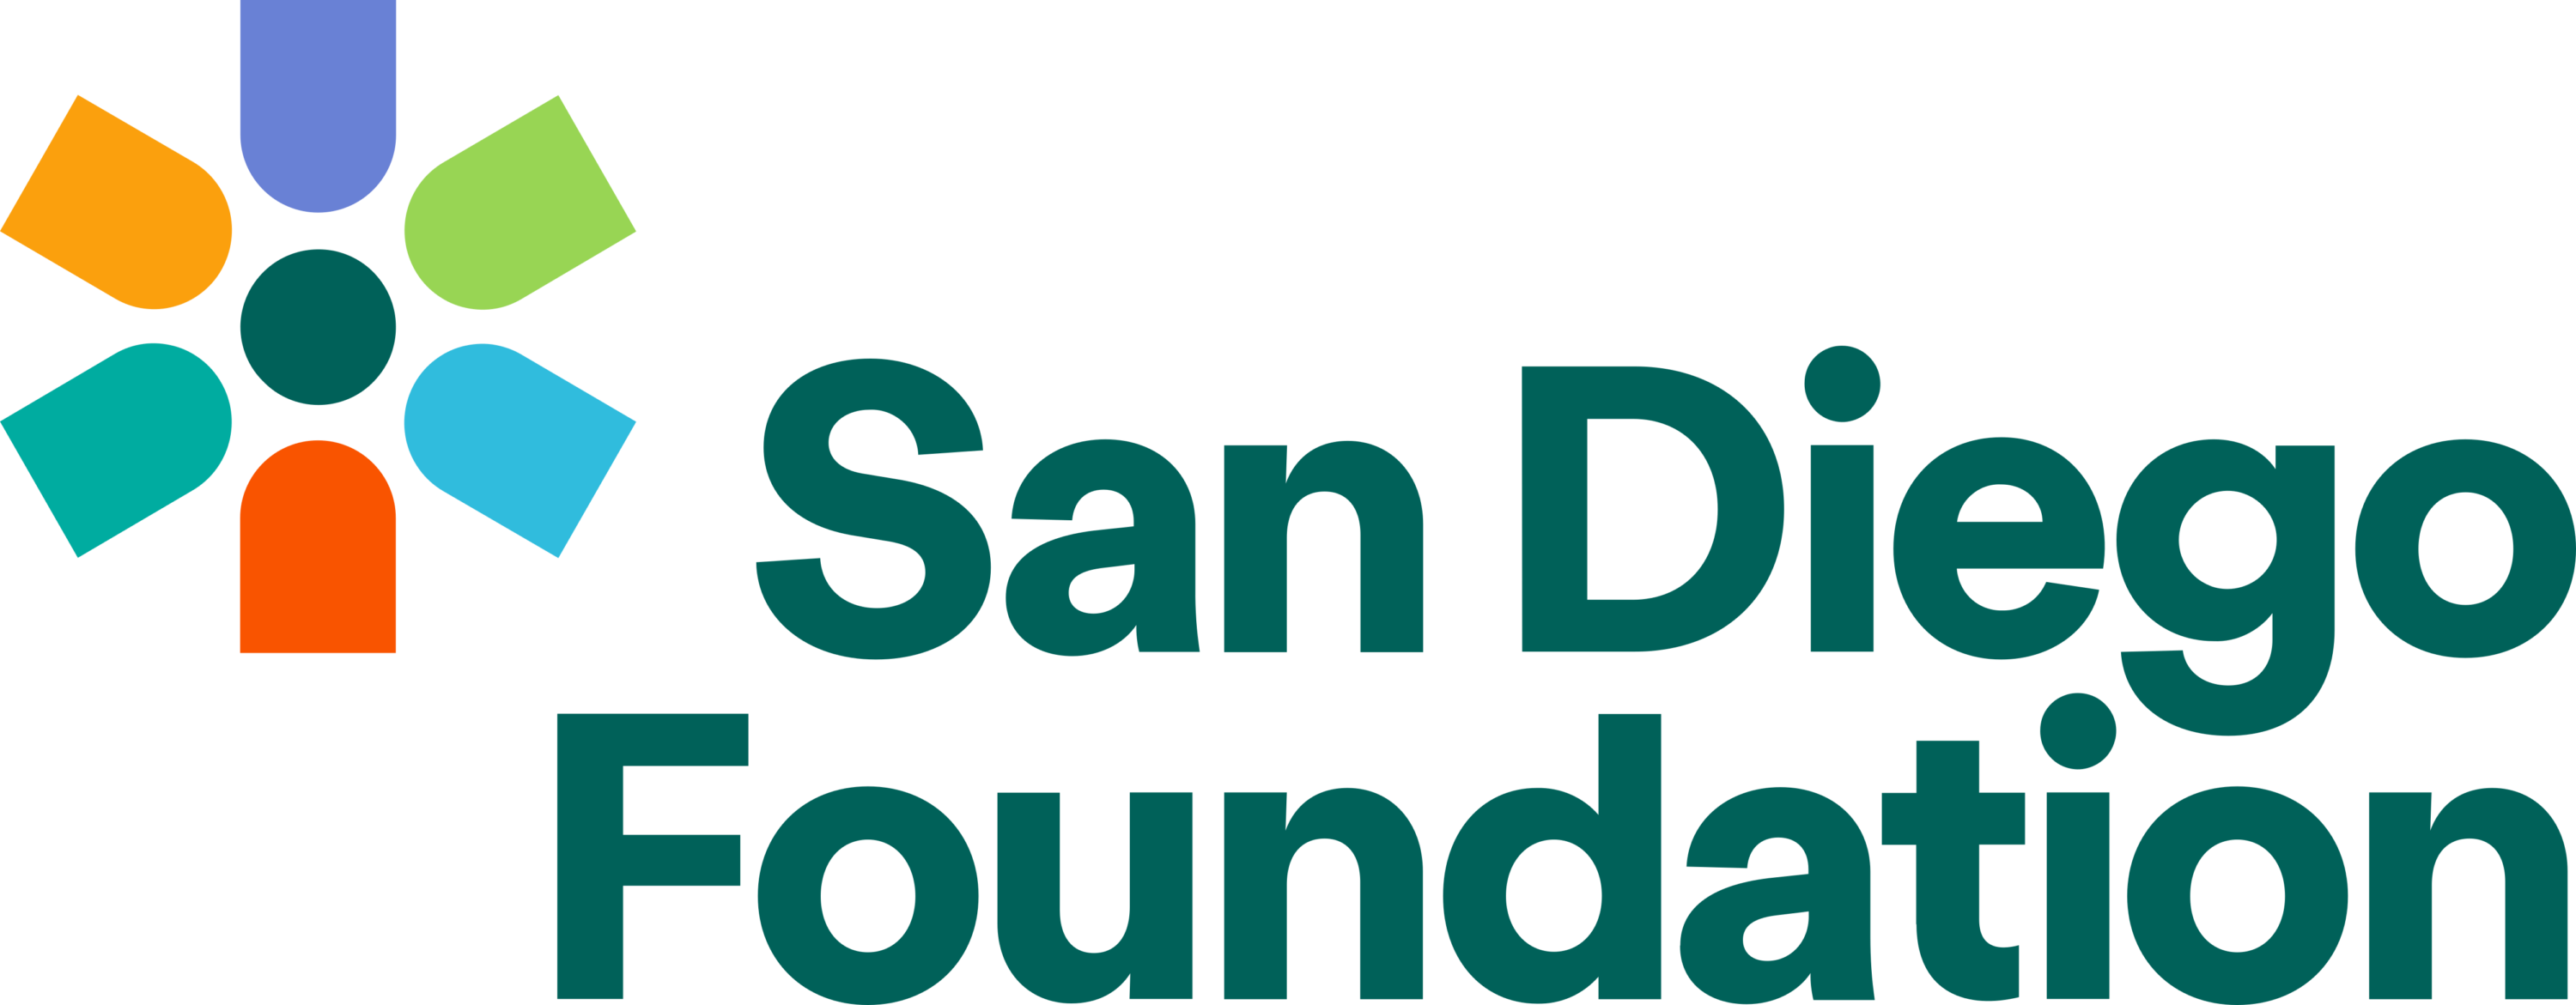 San Diego Foundation Logo